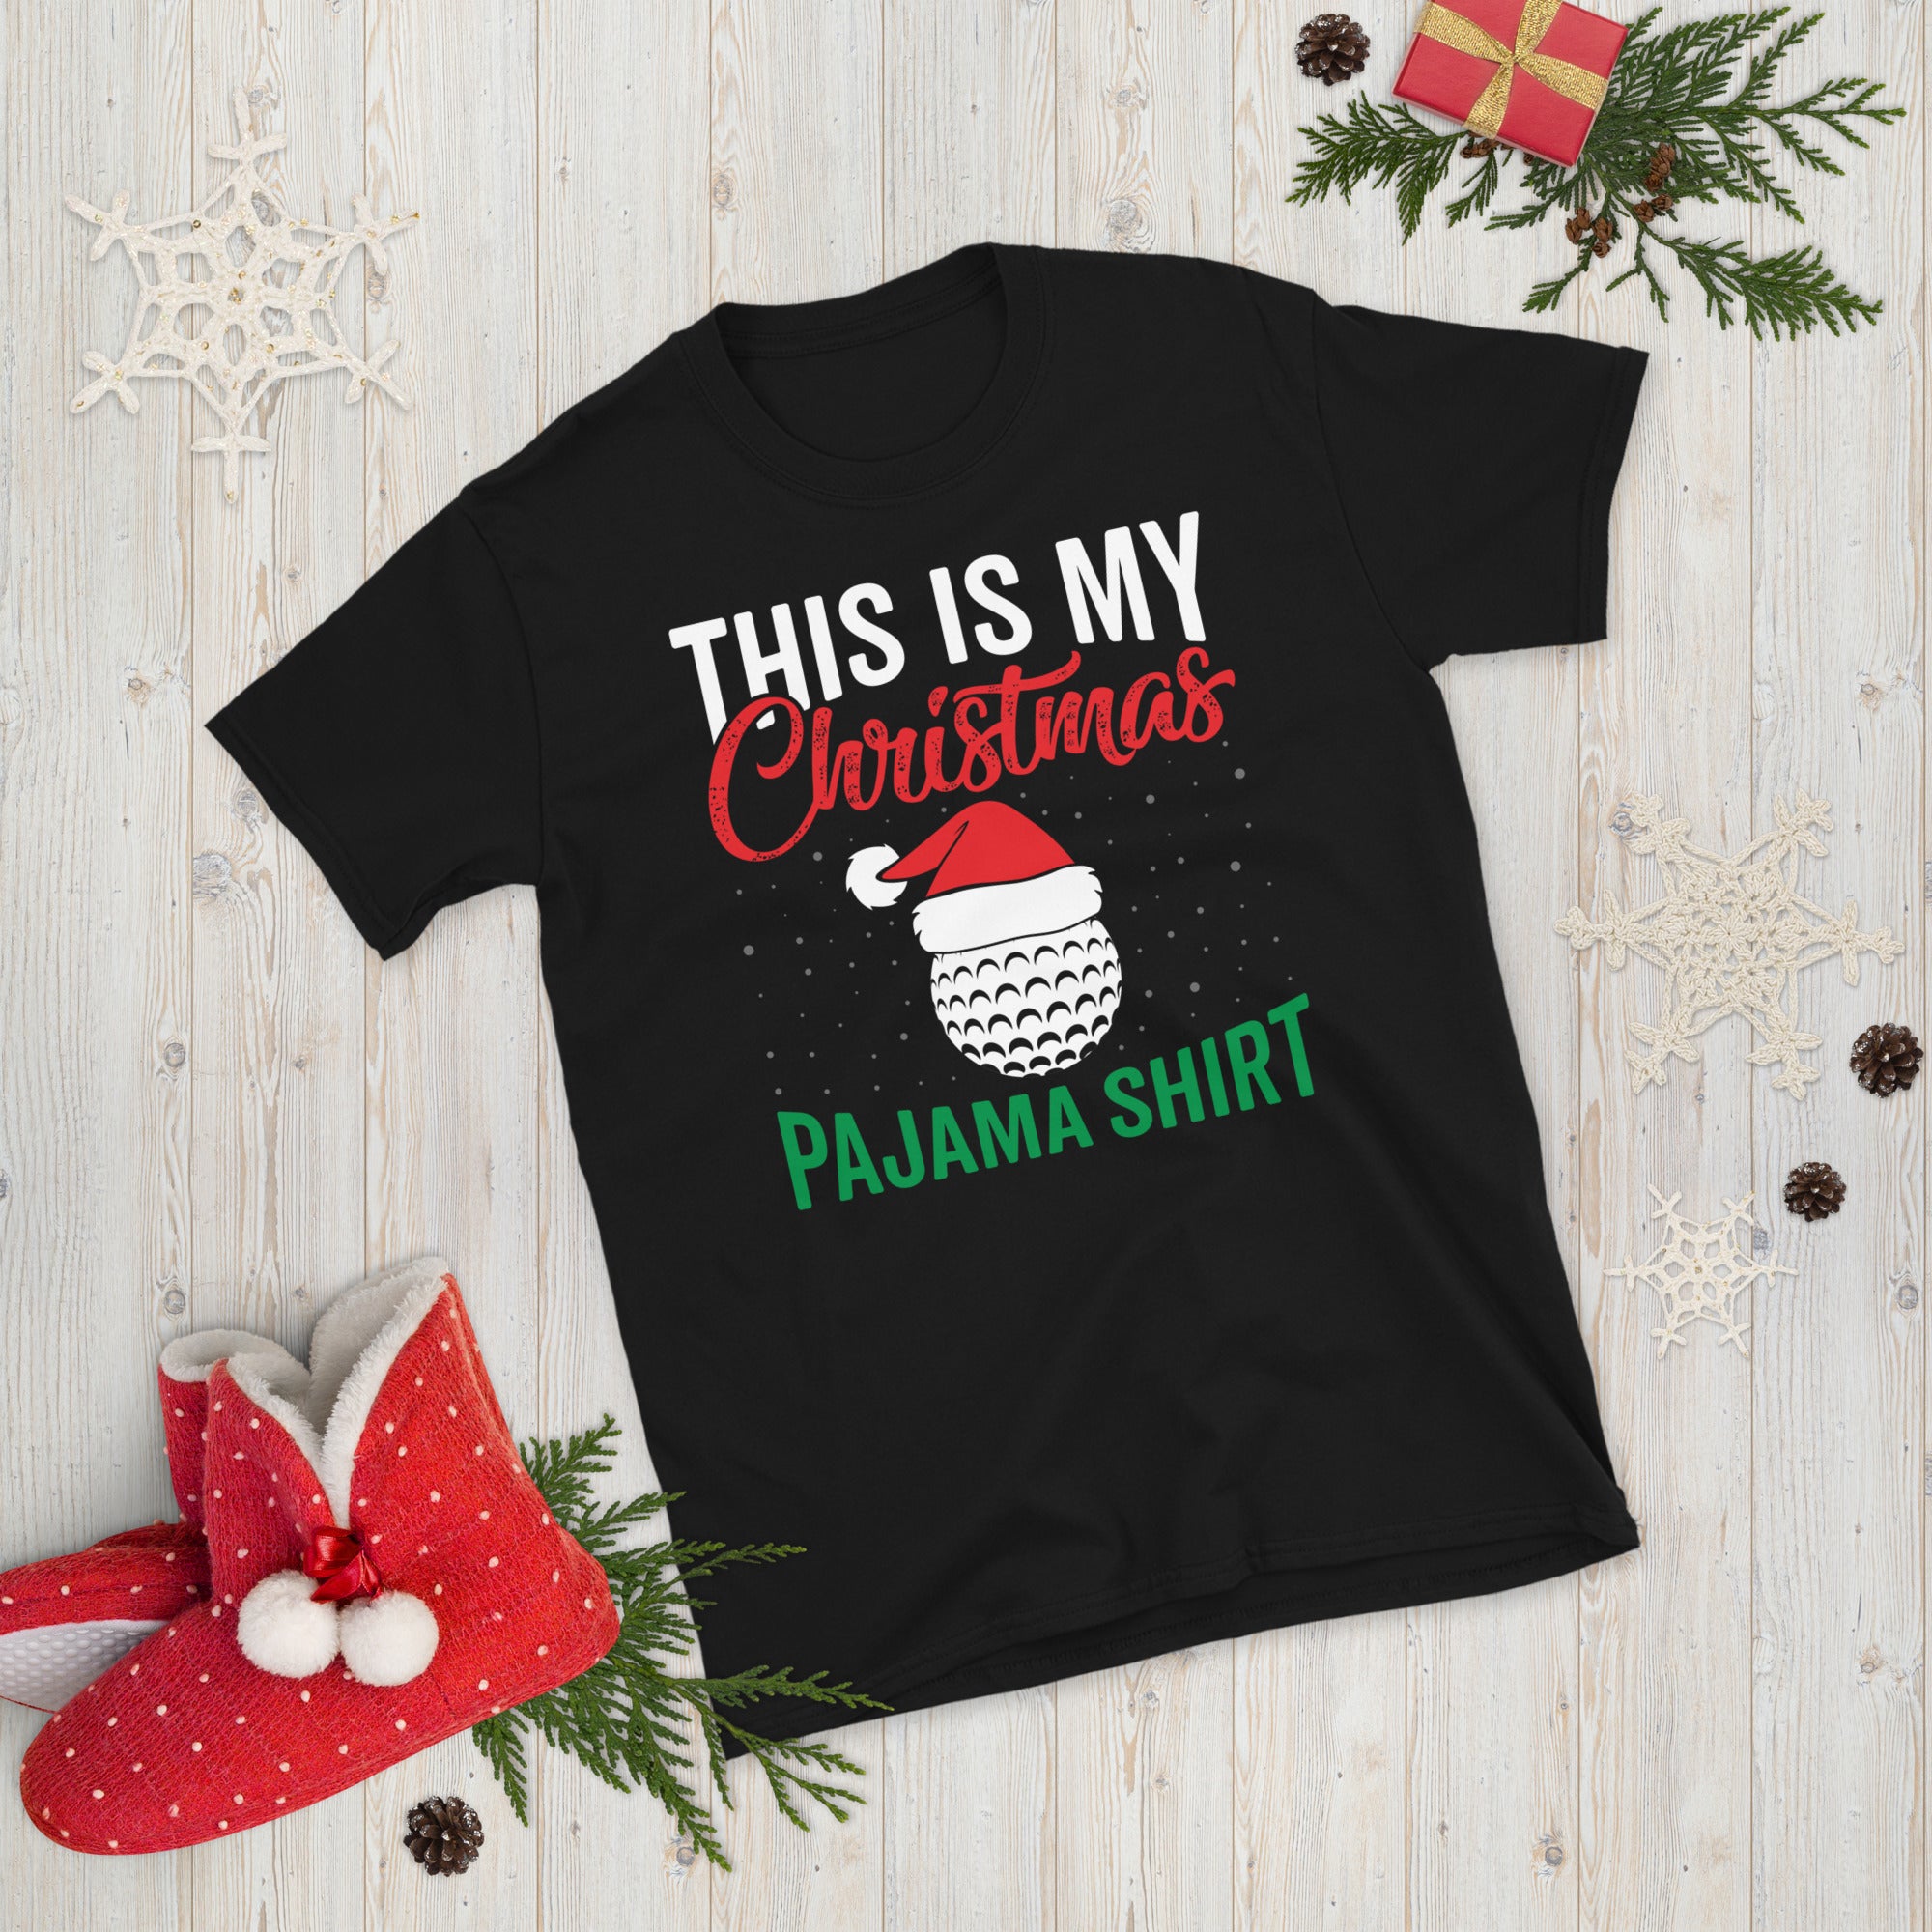 This Is My Christmas Pajama Shirt, Christmas Golf Shirt, Funny Golfing T Shirt, Golf Christmas Gift, Xmas Golf Tee, Golfer Christmas Shirt - Madeinsea©